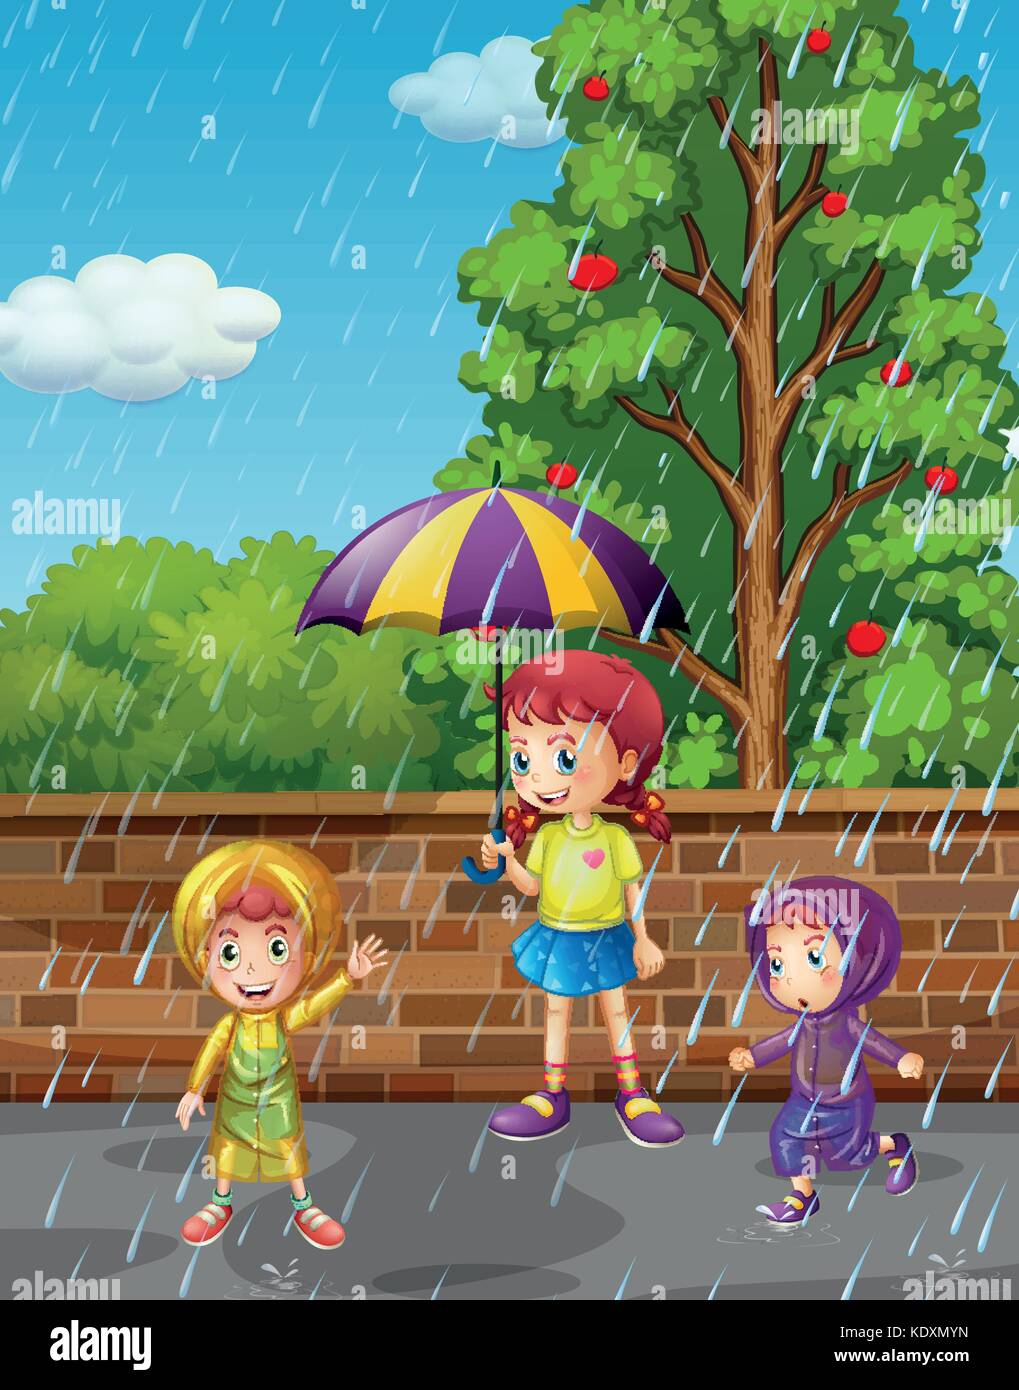 Rainy season with three kids in the rain illustration Stock Vector ...